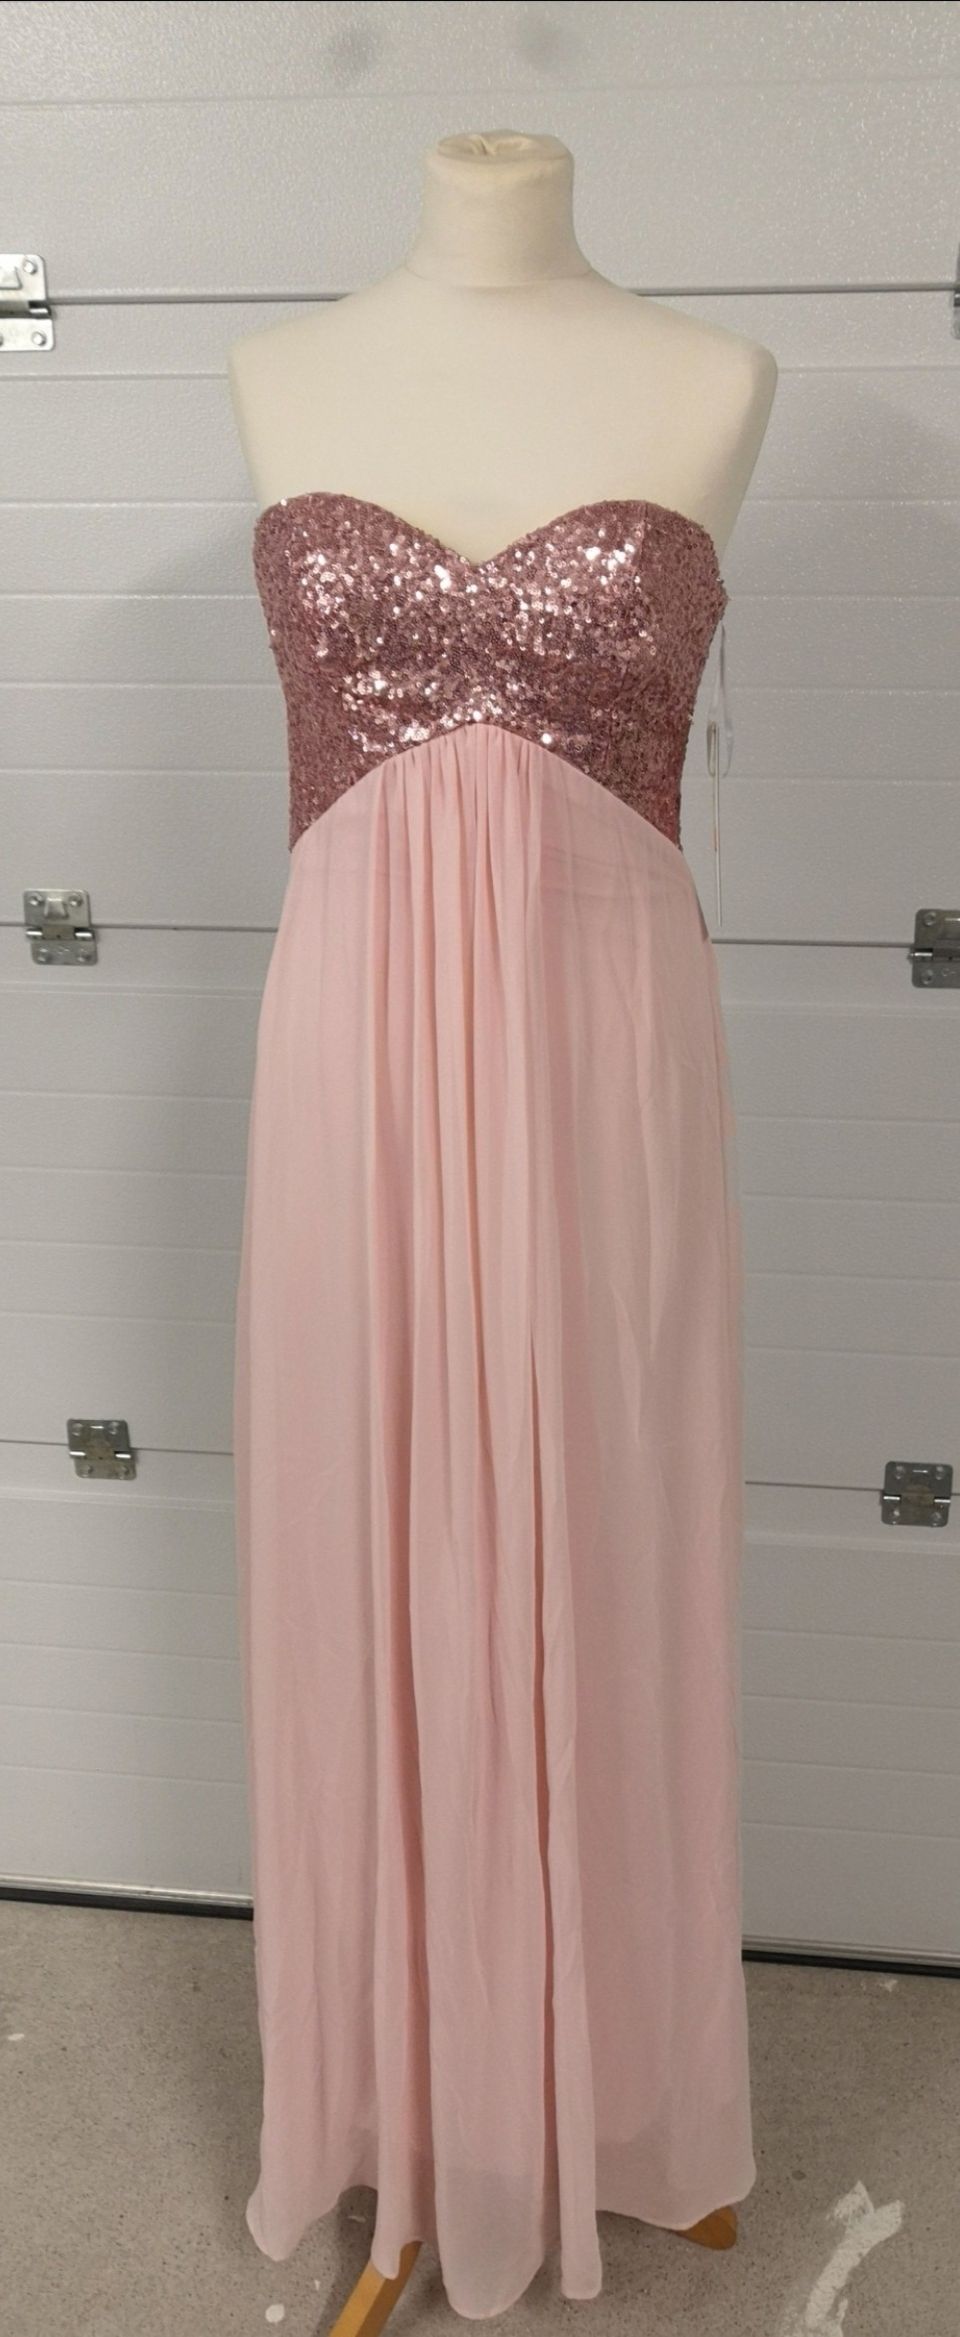 Uusi vaaleanpunainen mekko koko S